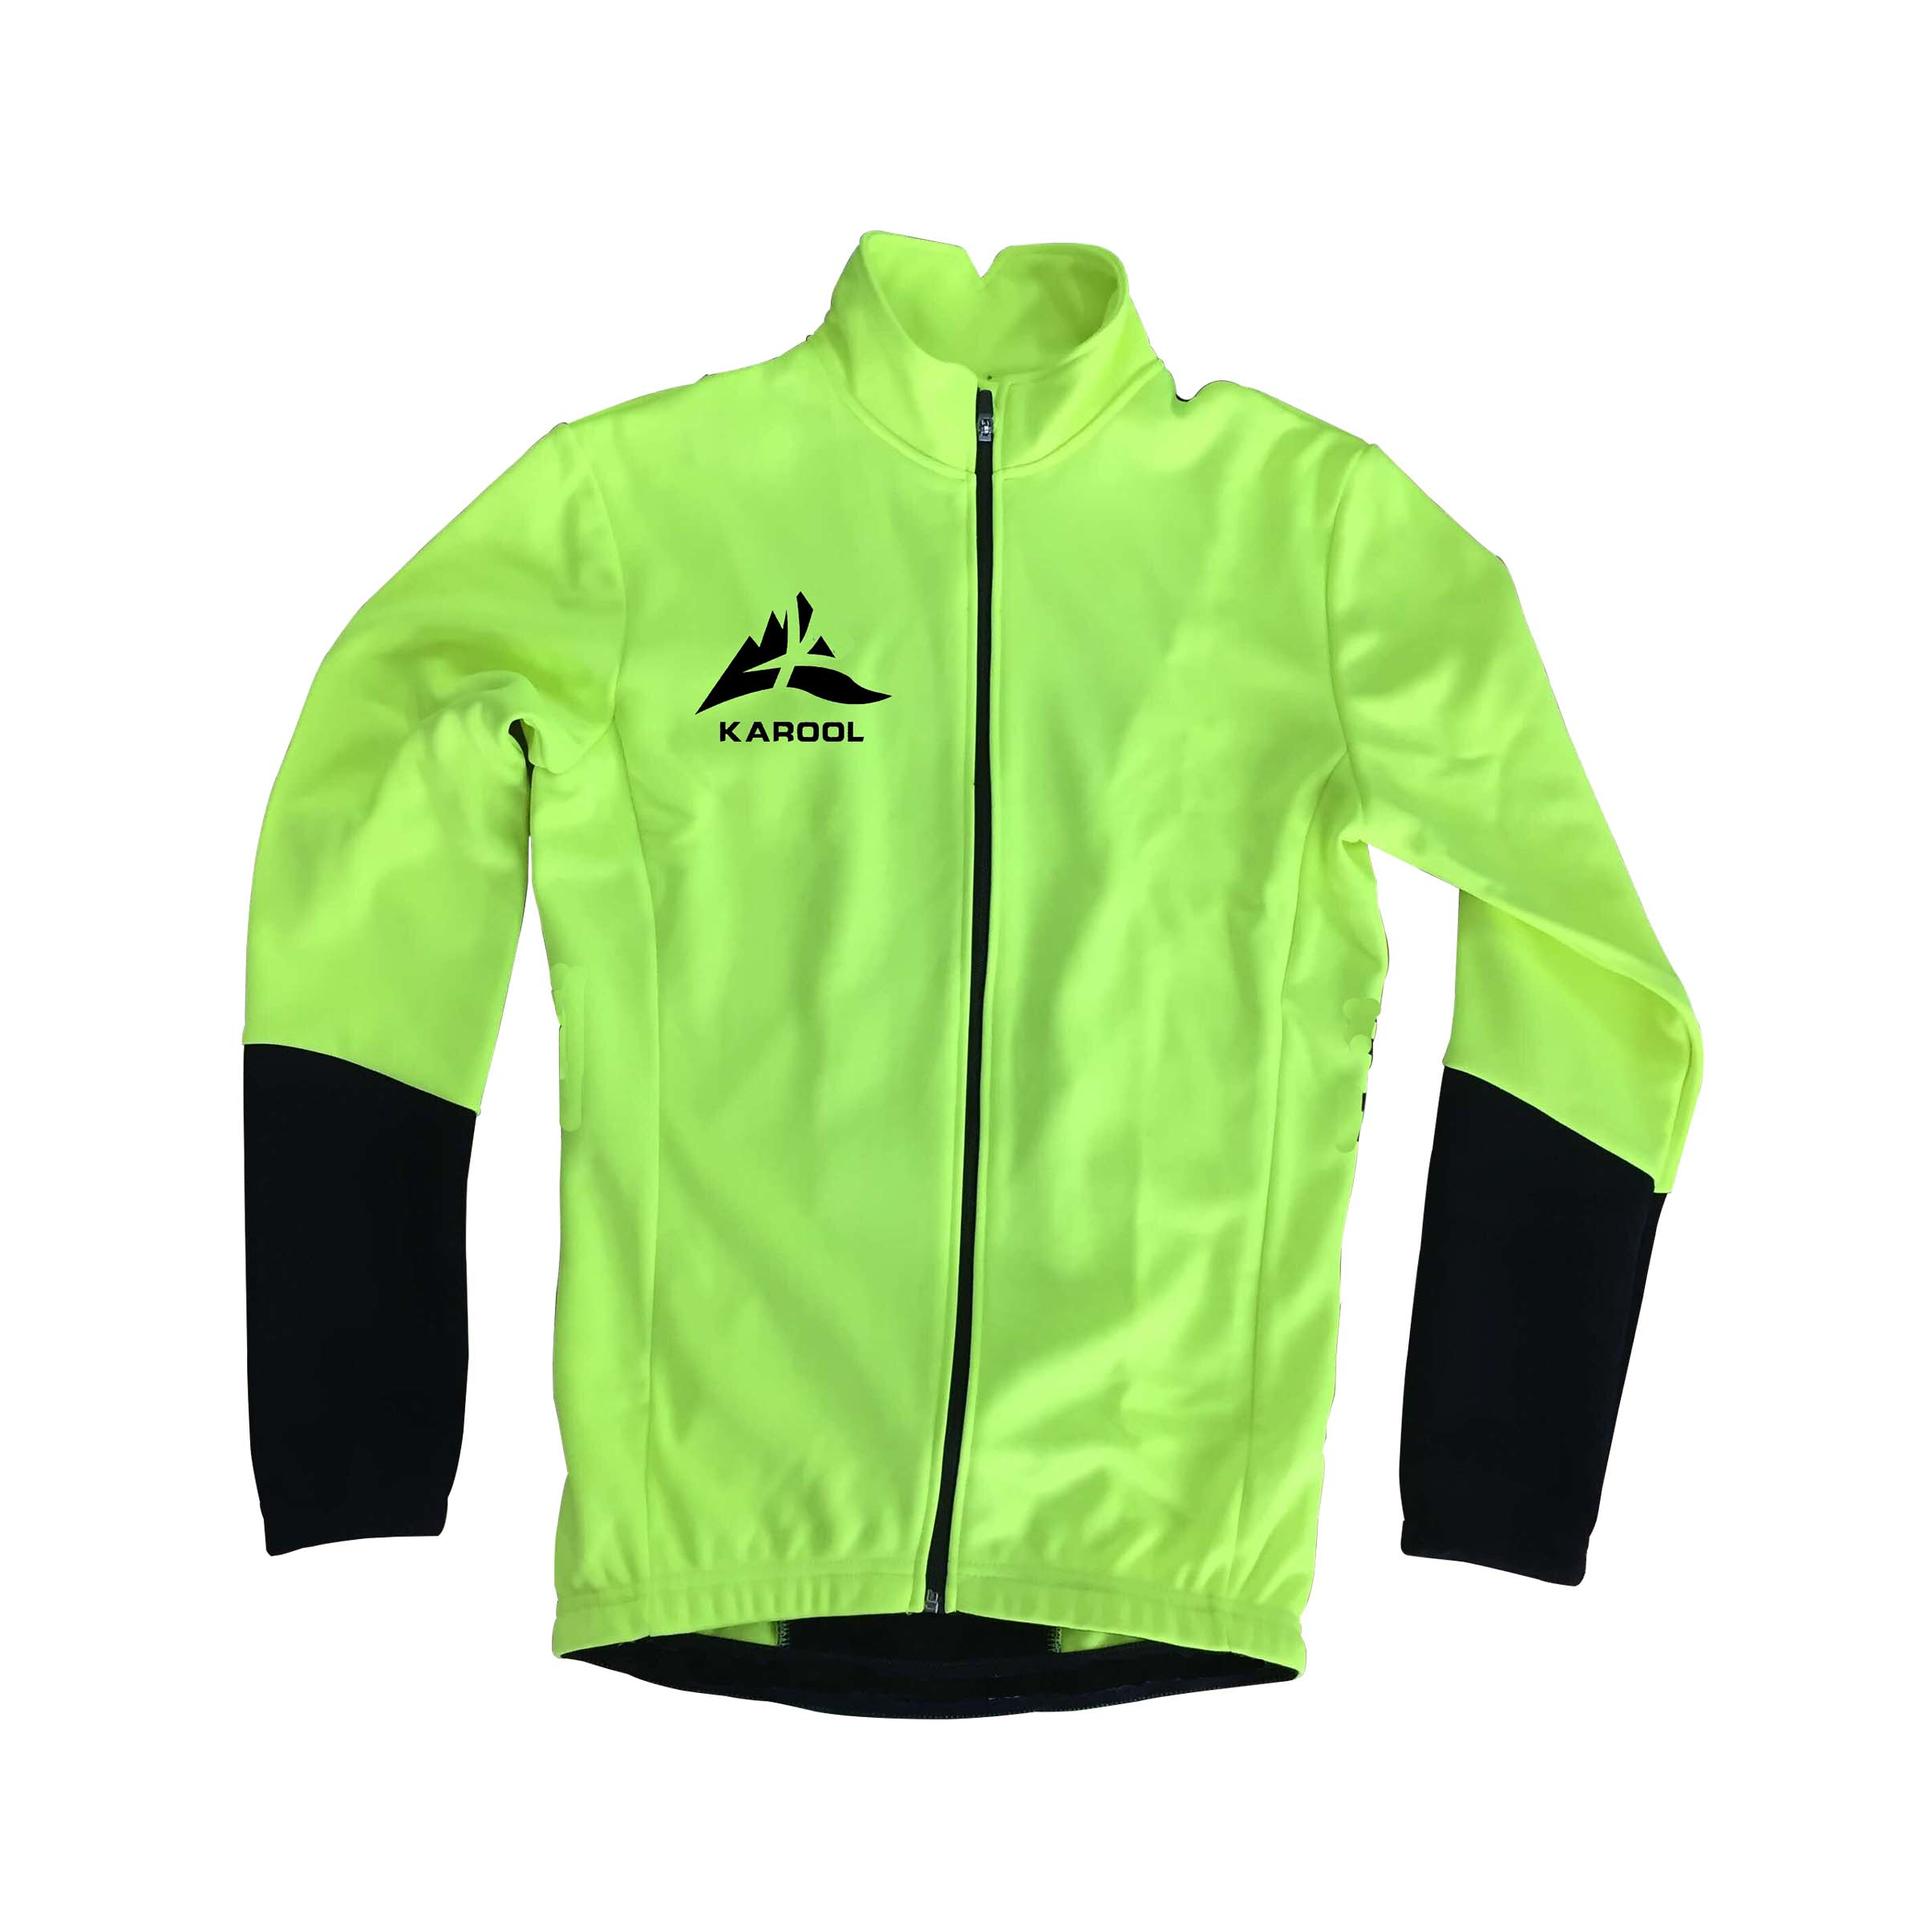 Cycling jacket